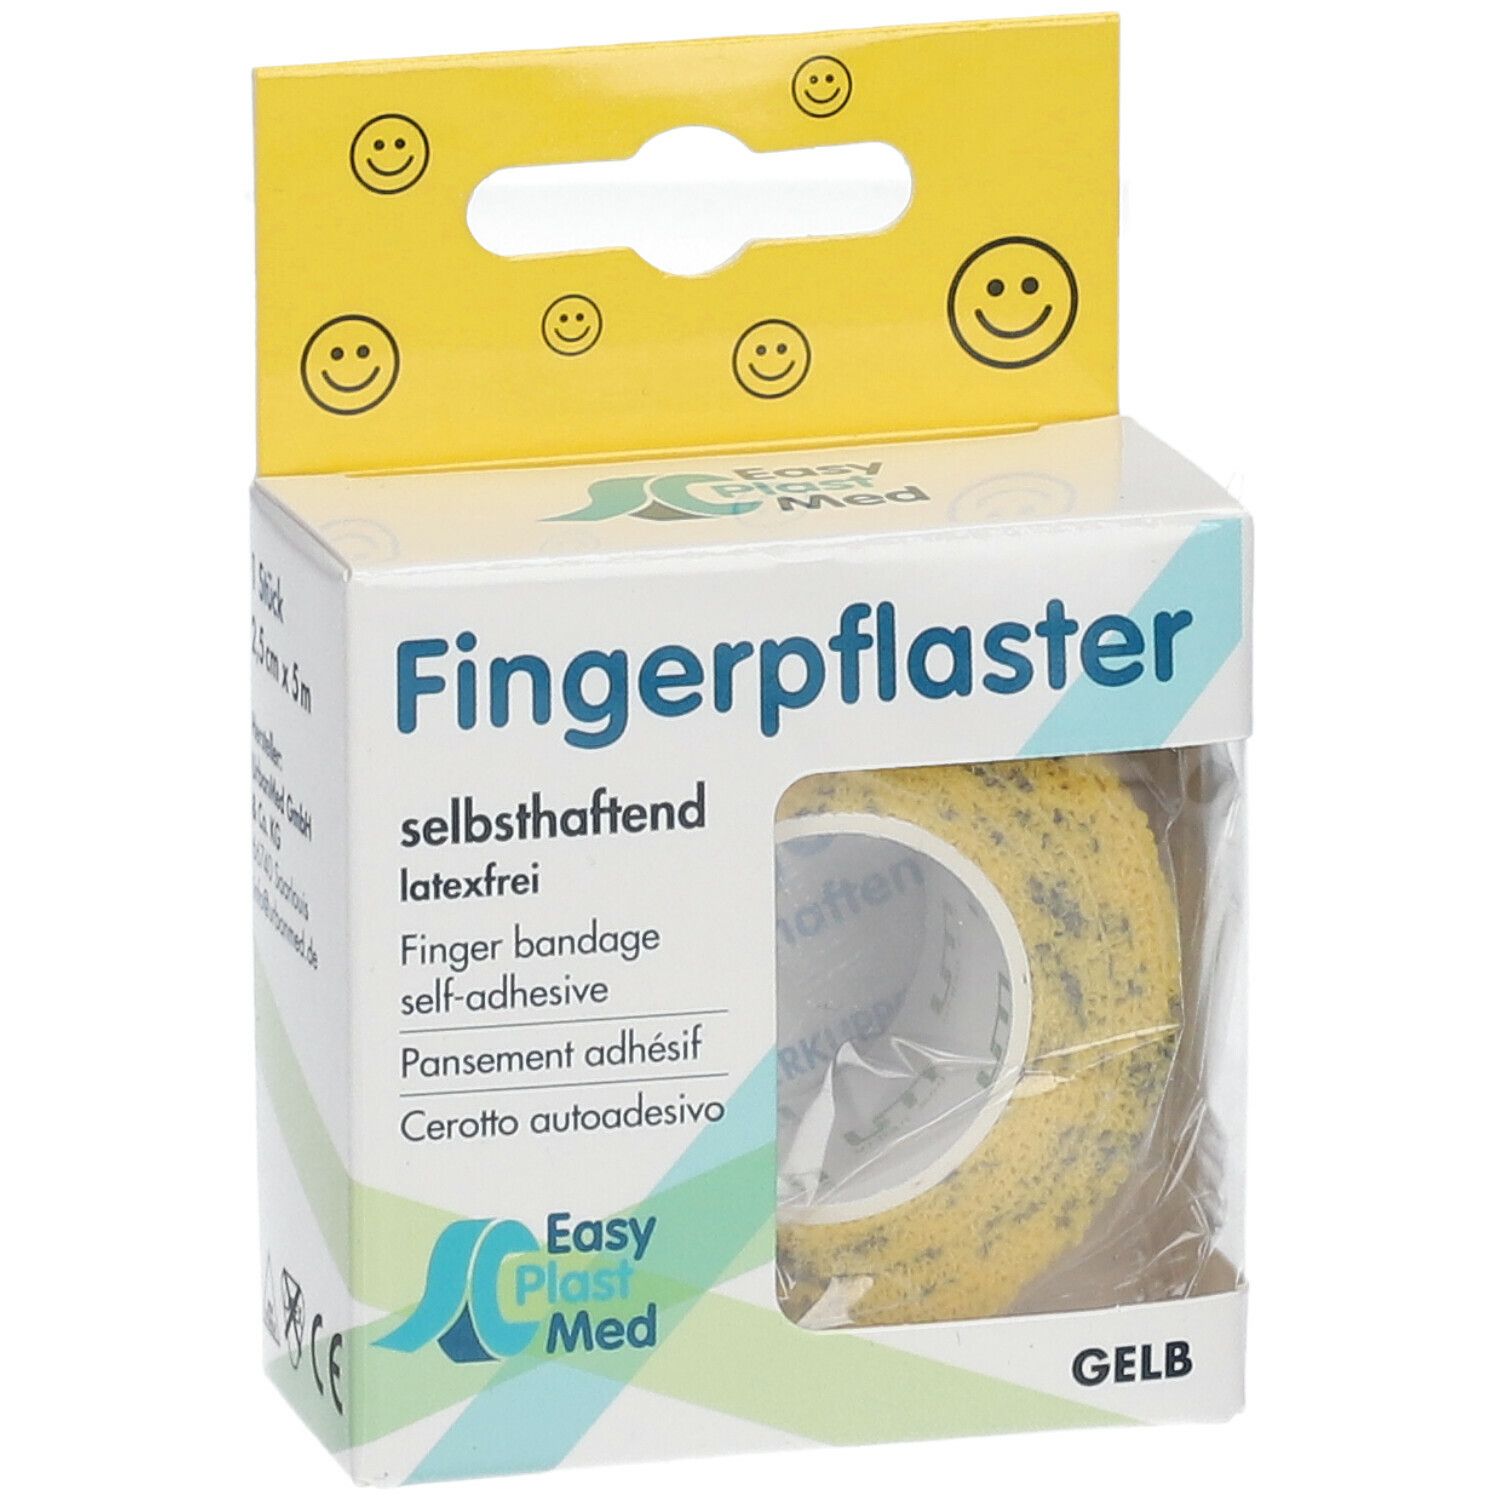 Easy Plast Med Fingerpflaster 2,5 cm x 5 m gelb Smileys